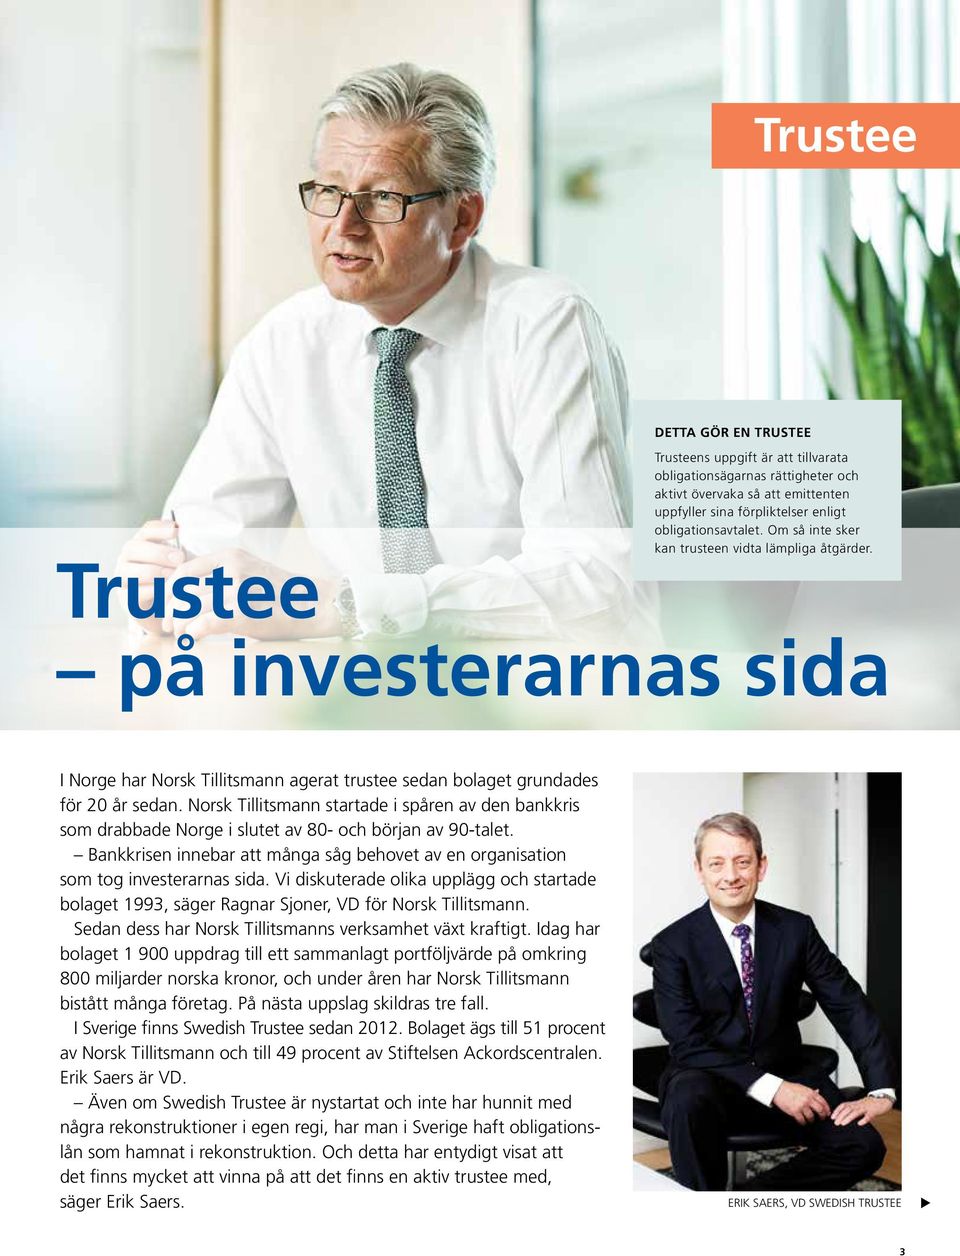 Norsk Tillitsmann startade i spåren av den bankkris som drabbade Norge i slutet av 80- och början av 90-talet. Bankkrisen innebar att många såg behovet av en organisation som tog investerarnas sida.